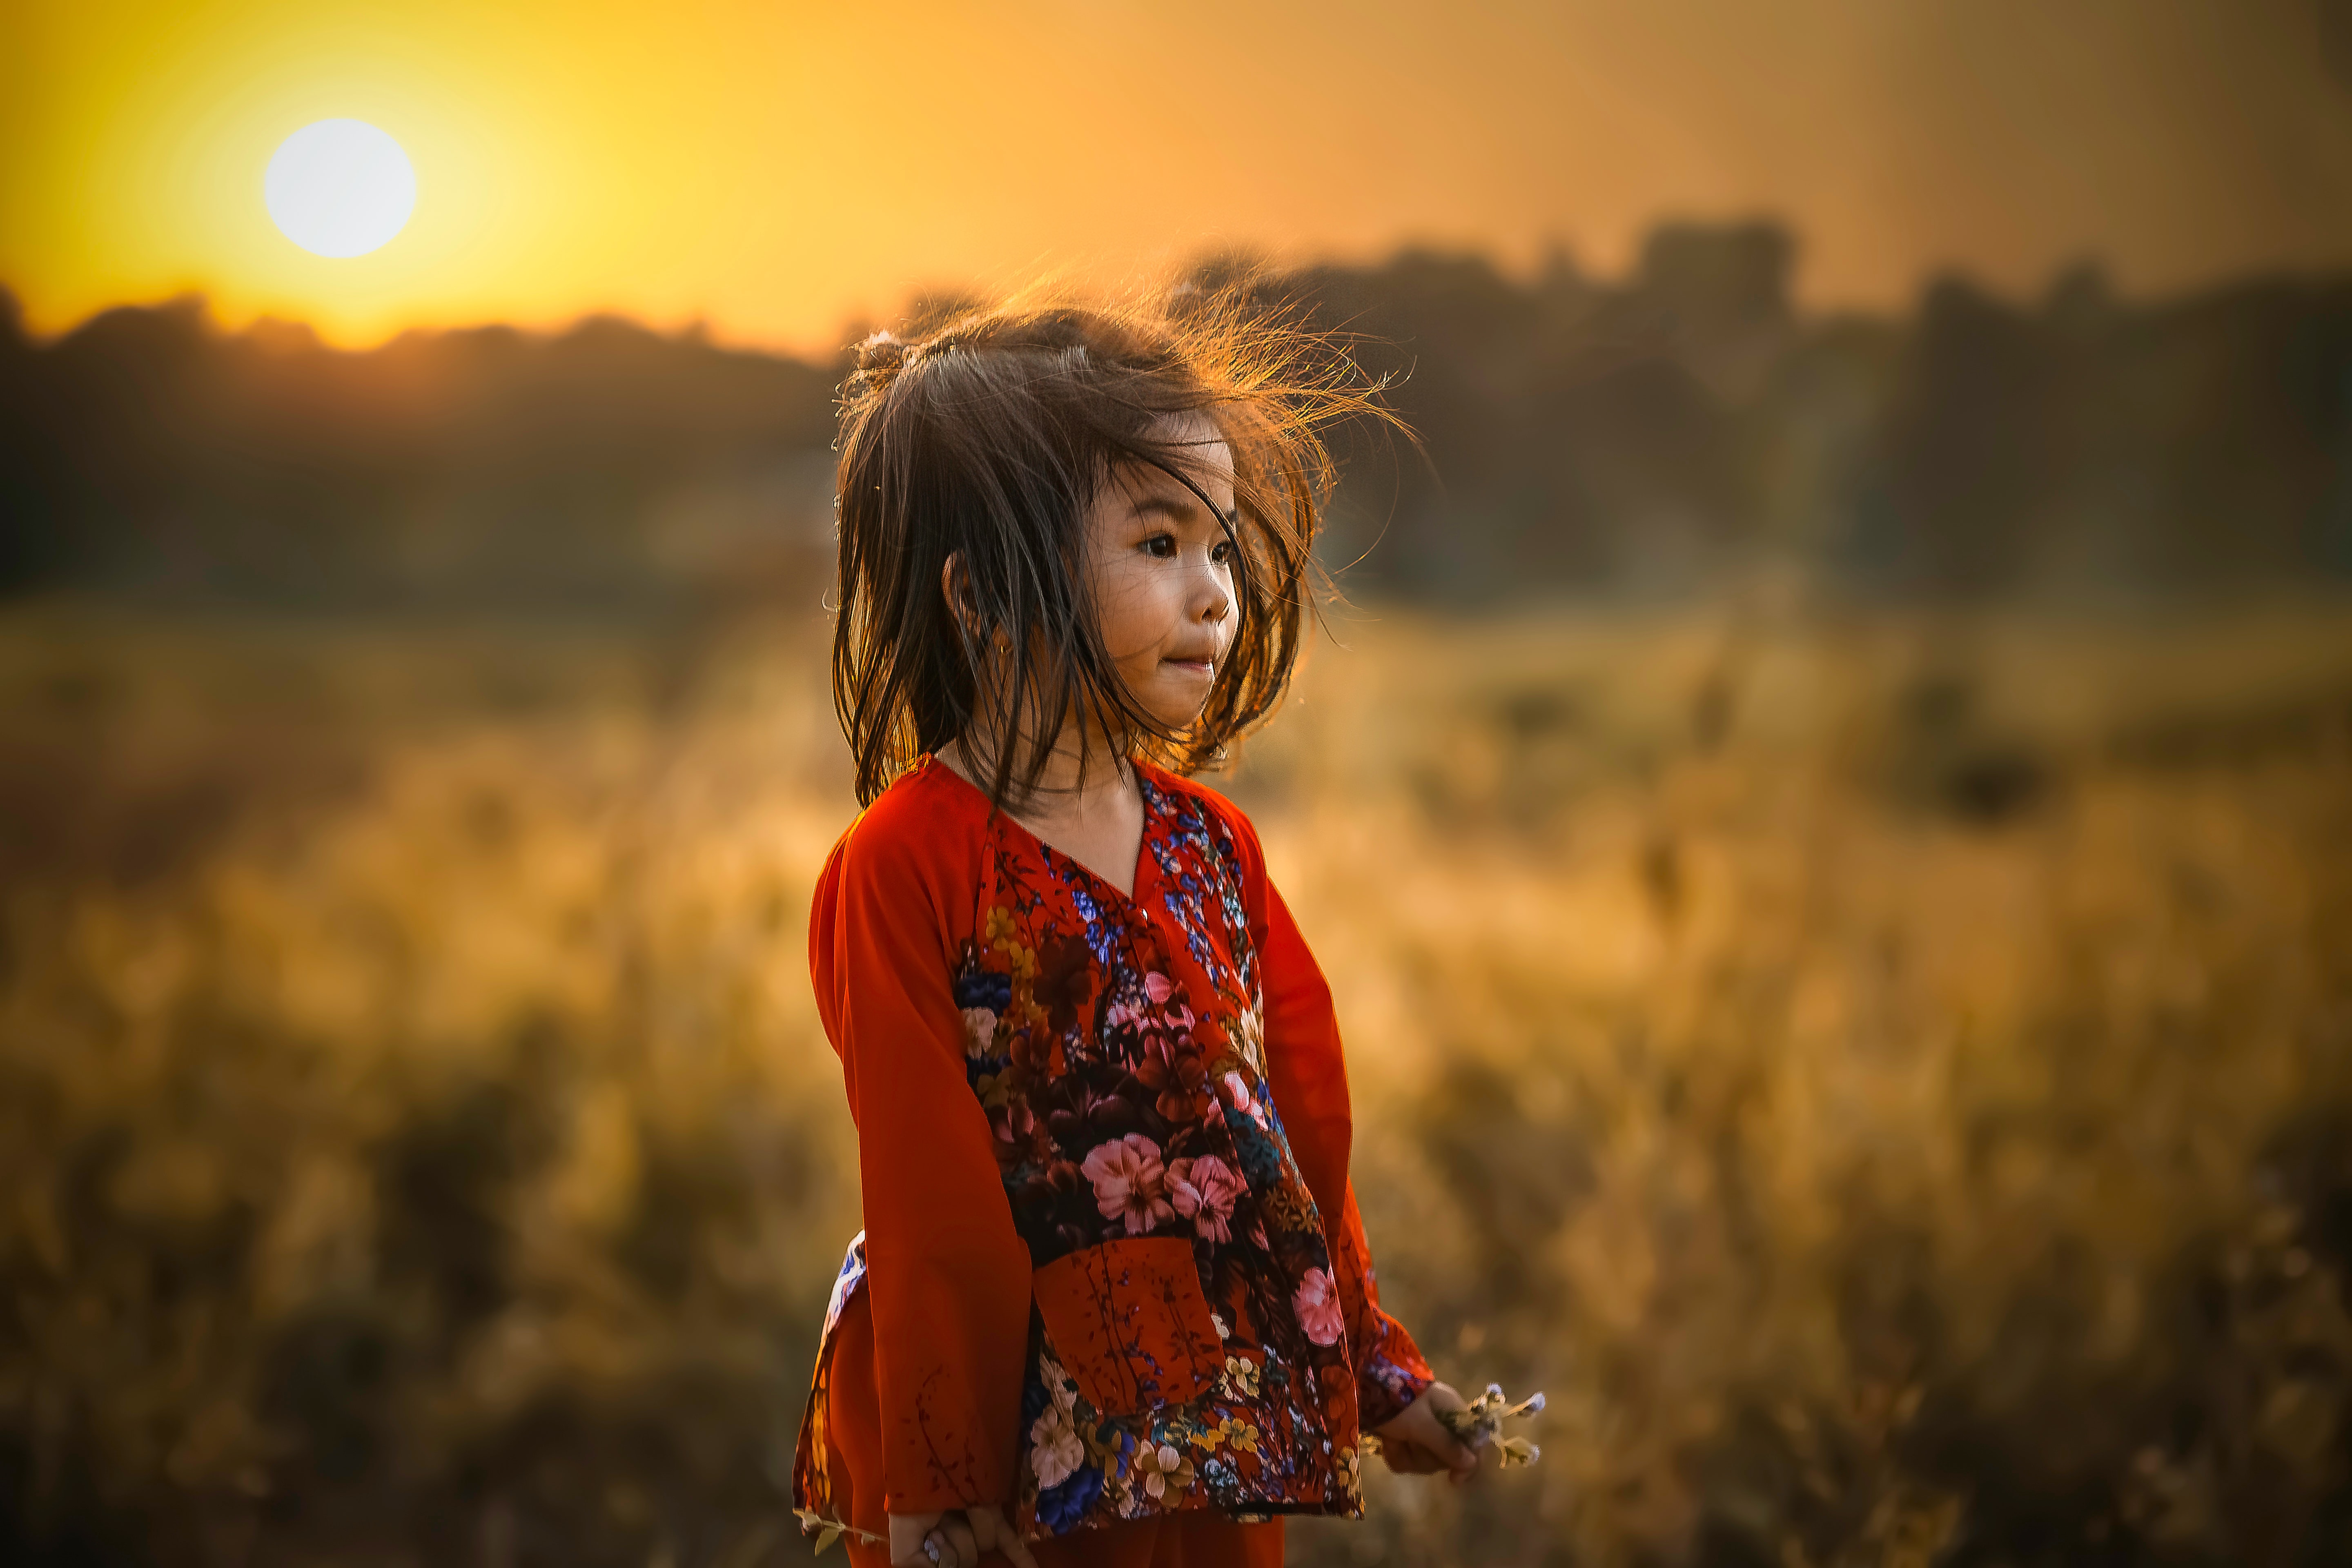 A girl in a field.